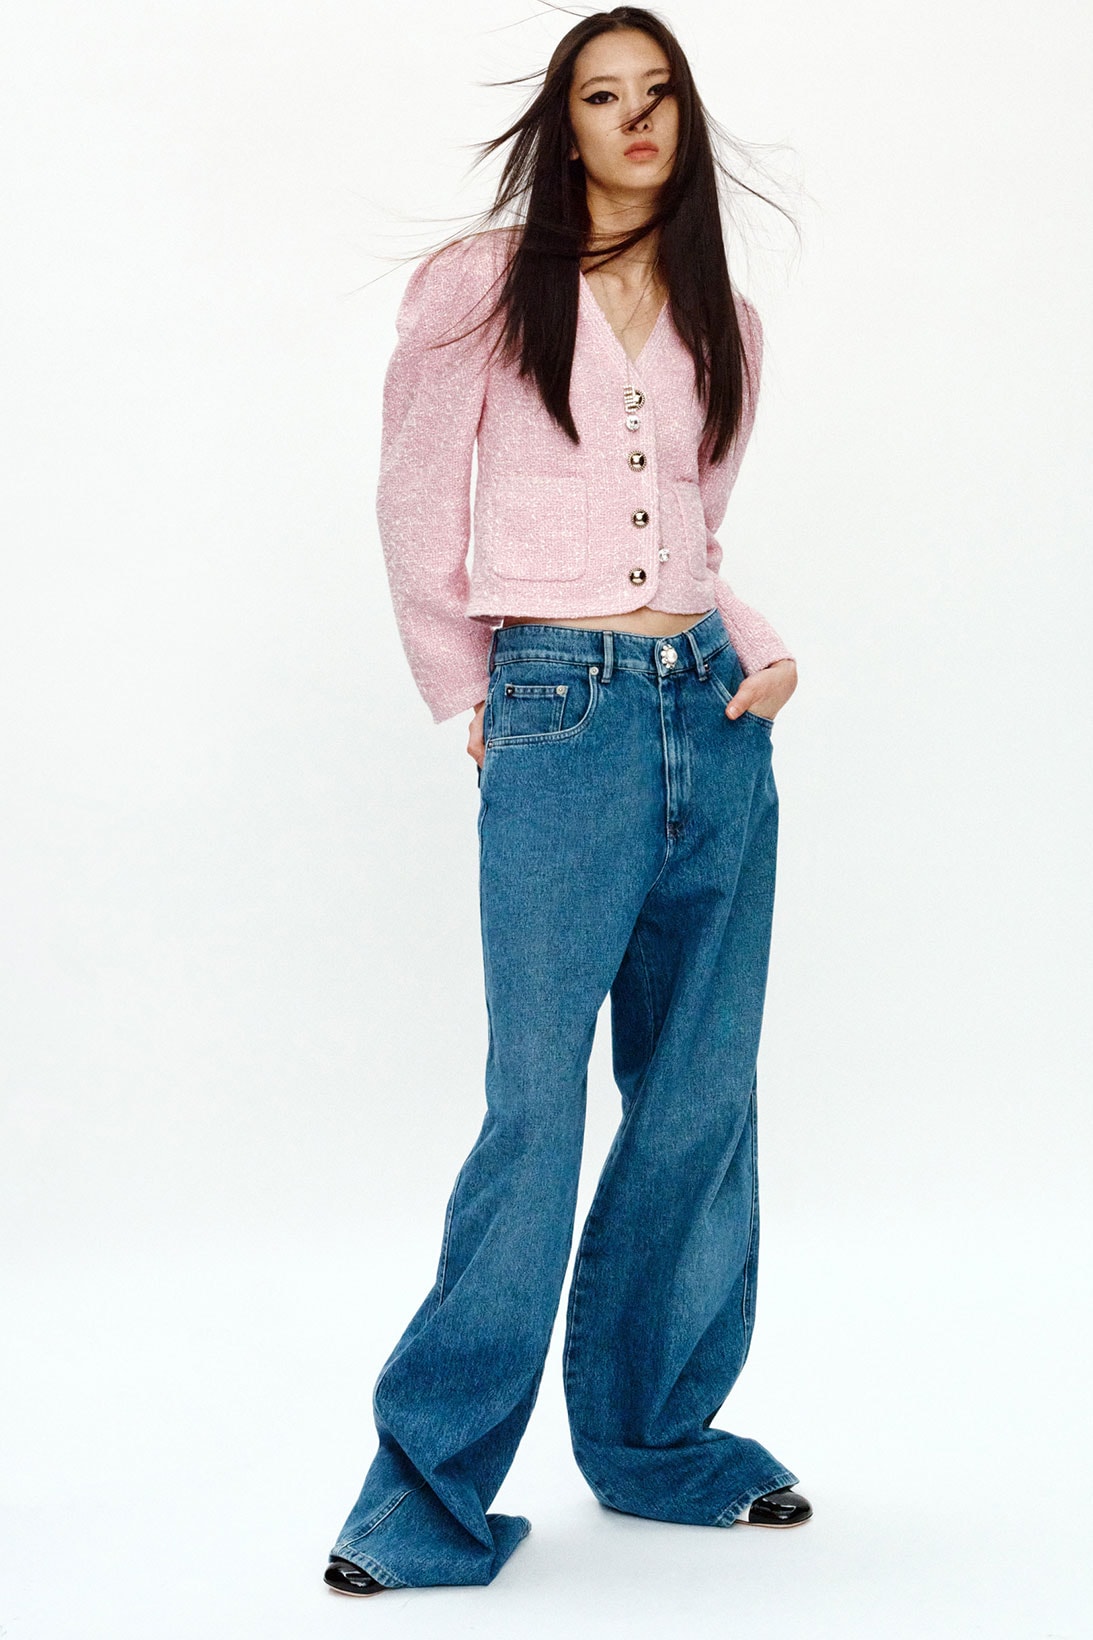 Miu Miu Qixi Chinese Valentine's Day Pink Jacket Denim Jeans